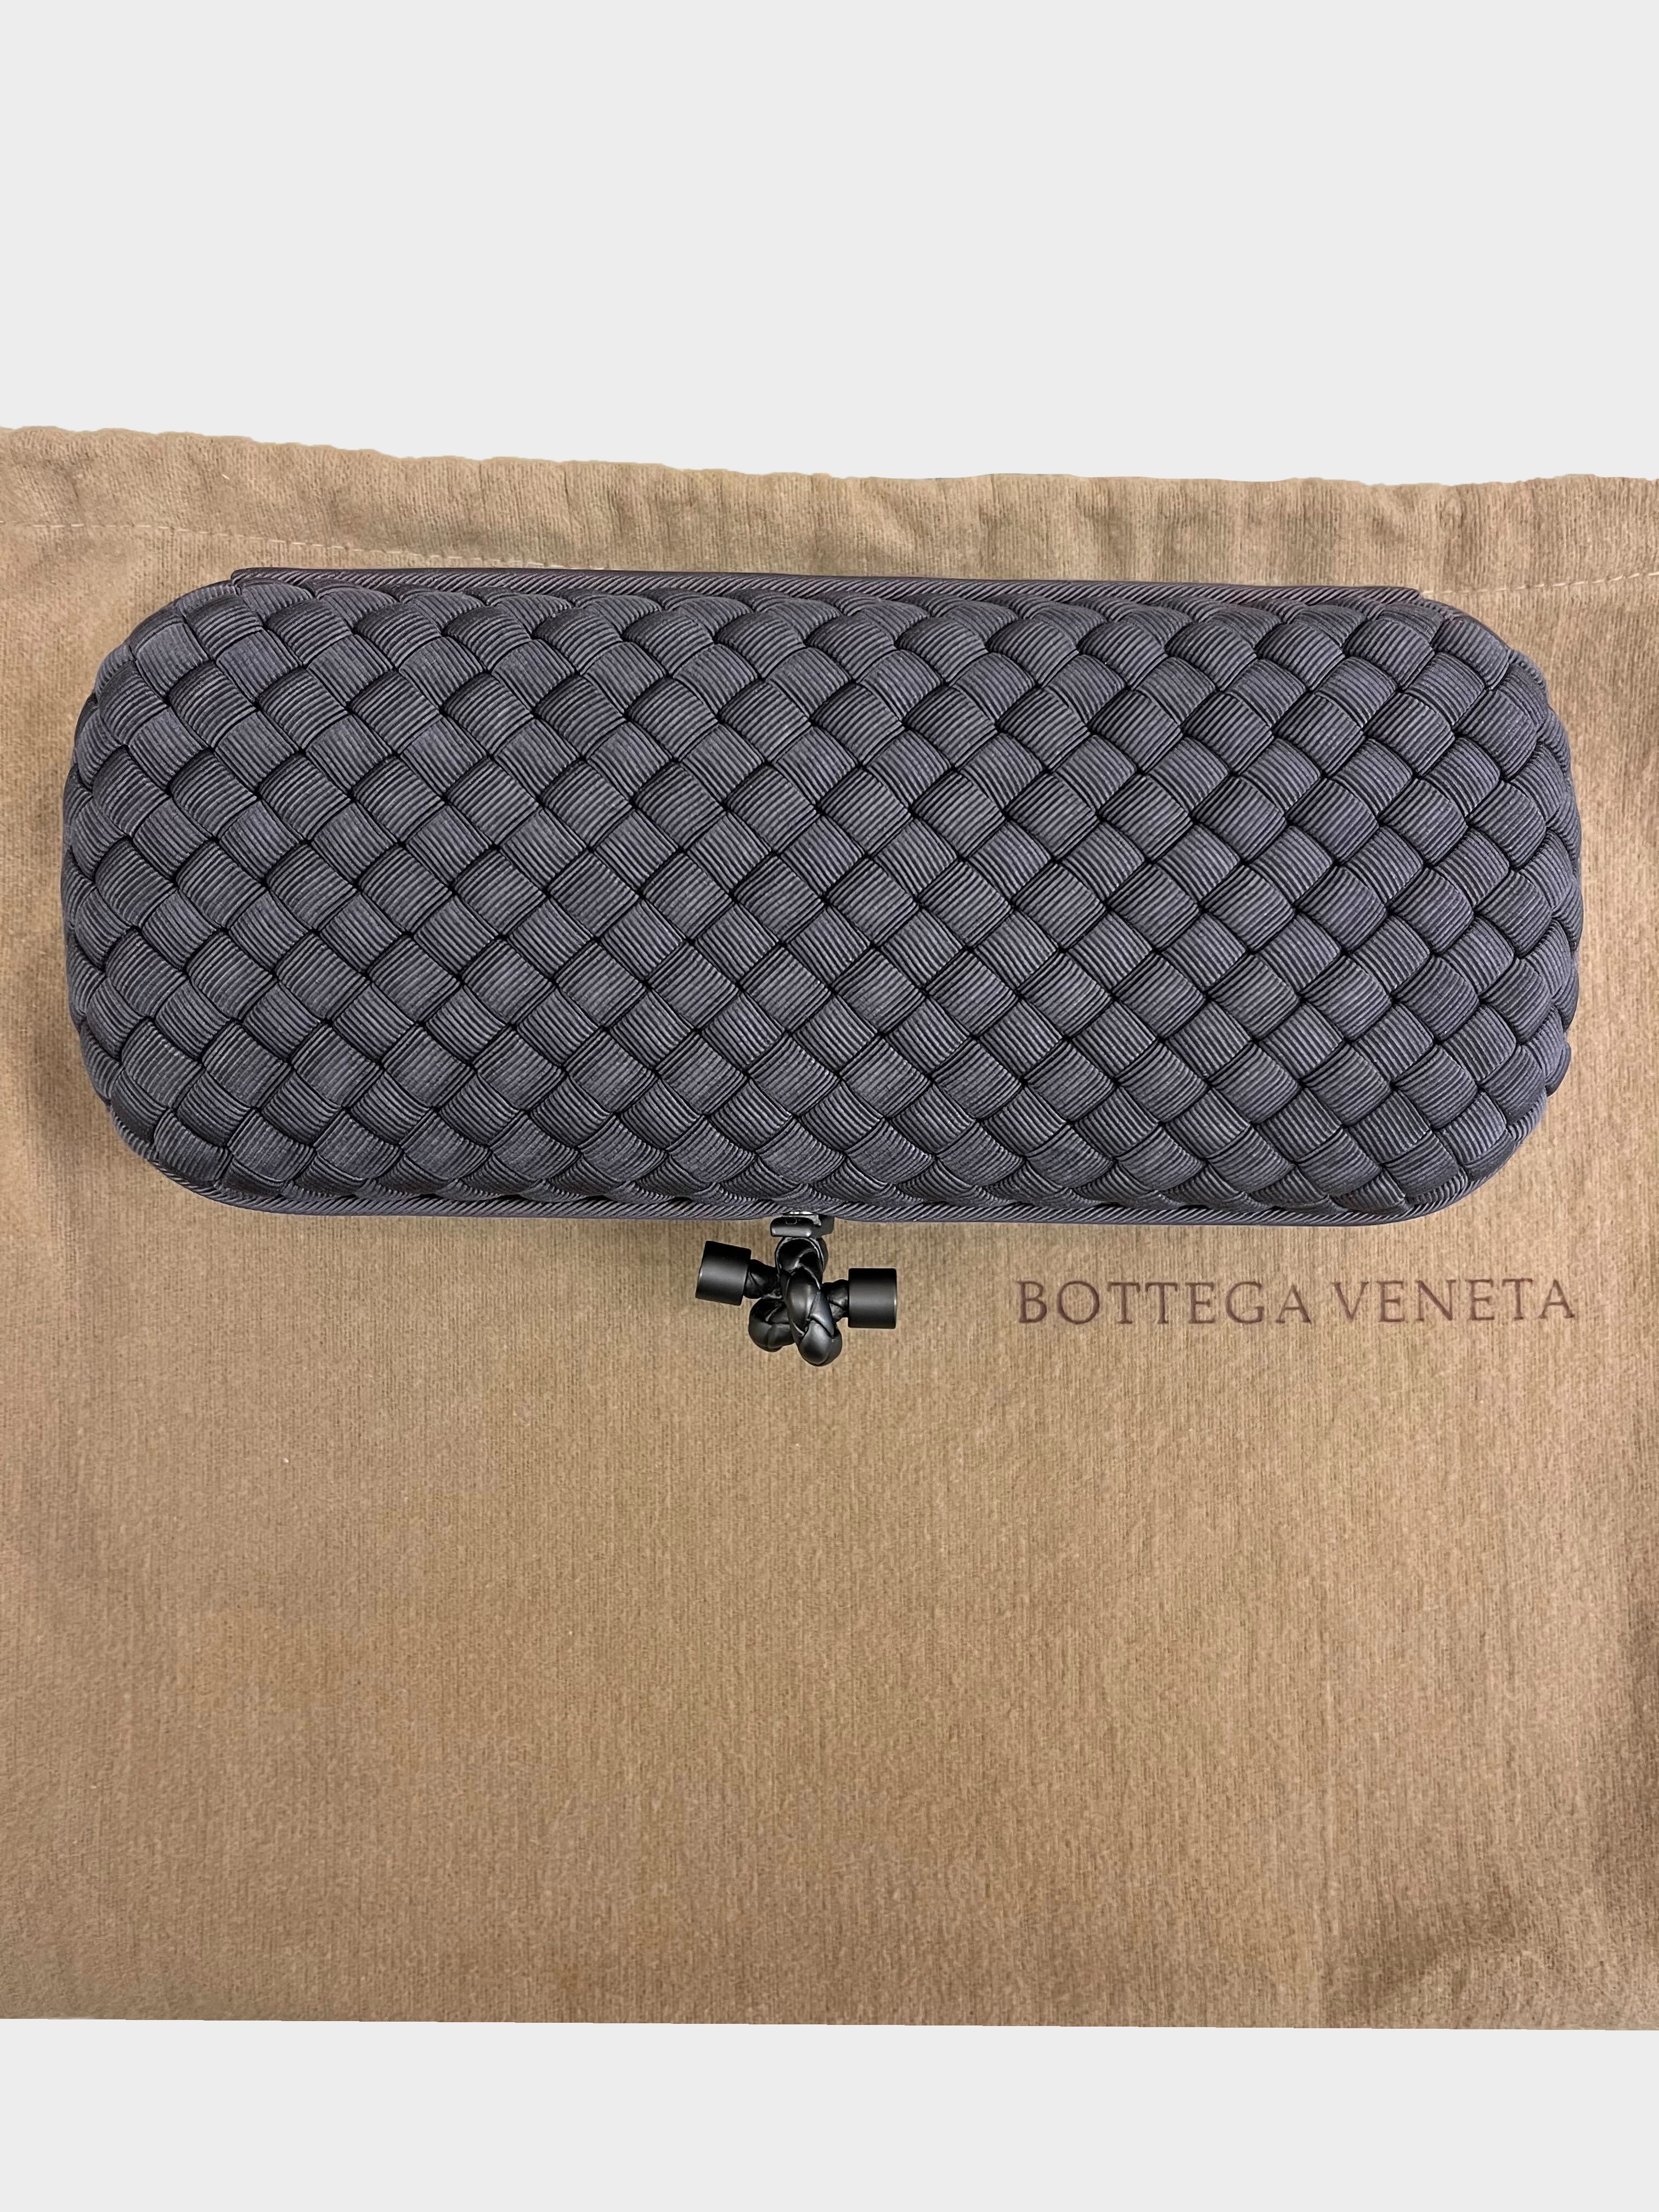 Bottega Veneta 2010s Grey Silk Knot Clutch